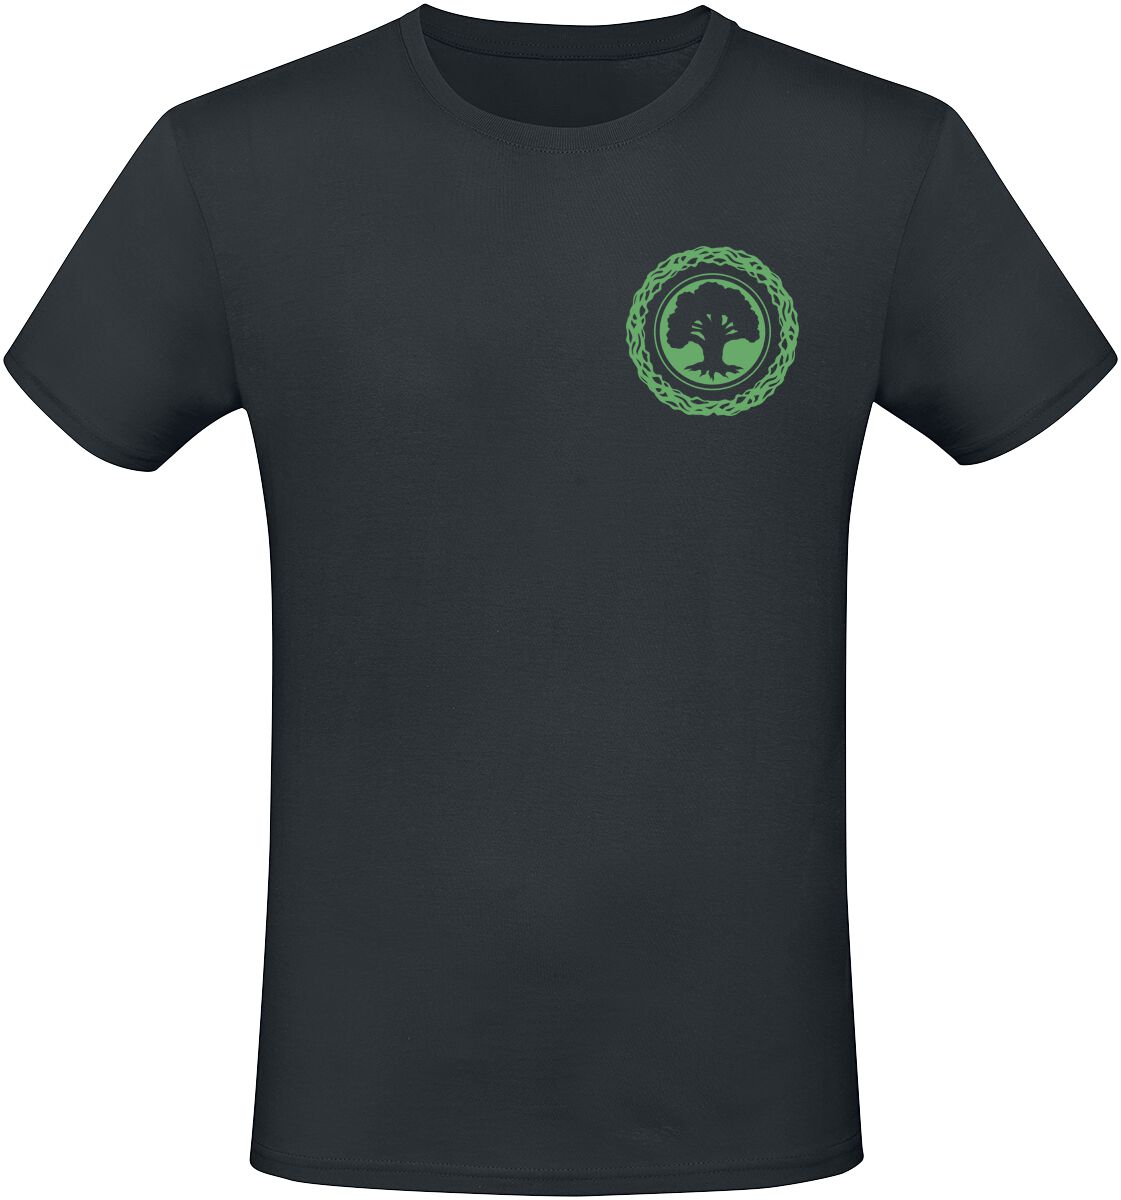 Magic: The Gathering - Gaming T-Shirt - Green Mana - S bis XXL - für Männer - Größe M - schwarz  - EMP exklusives Merchandise!